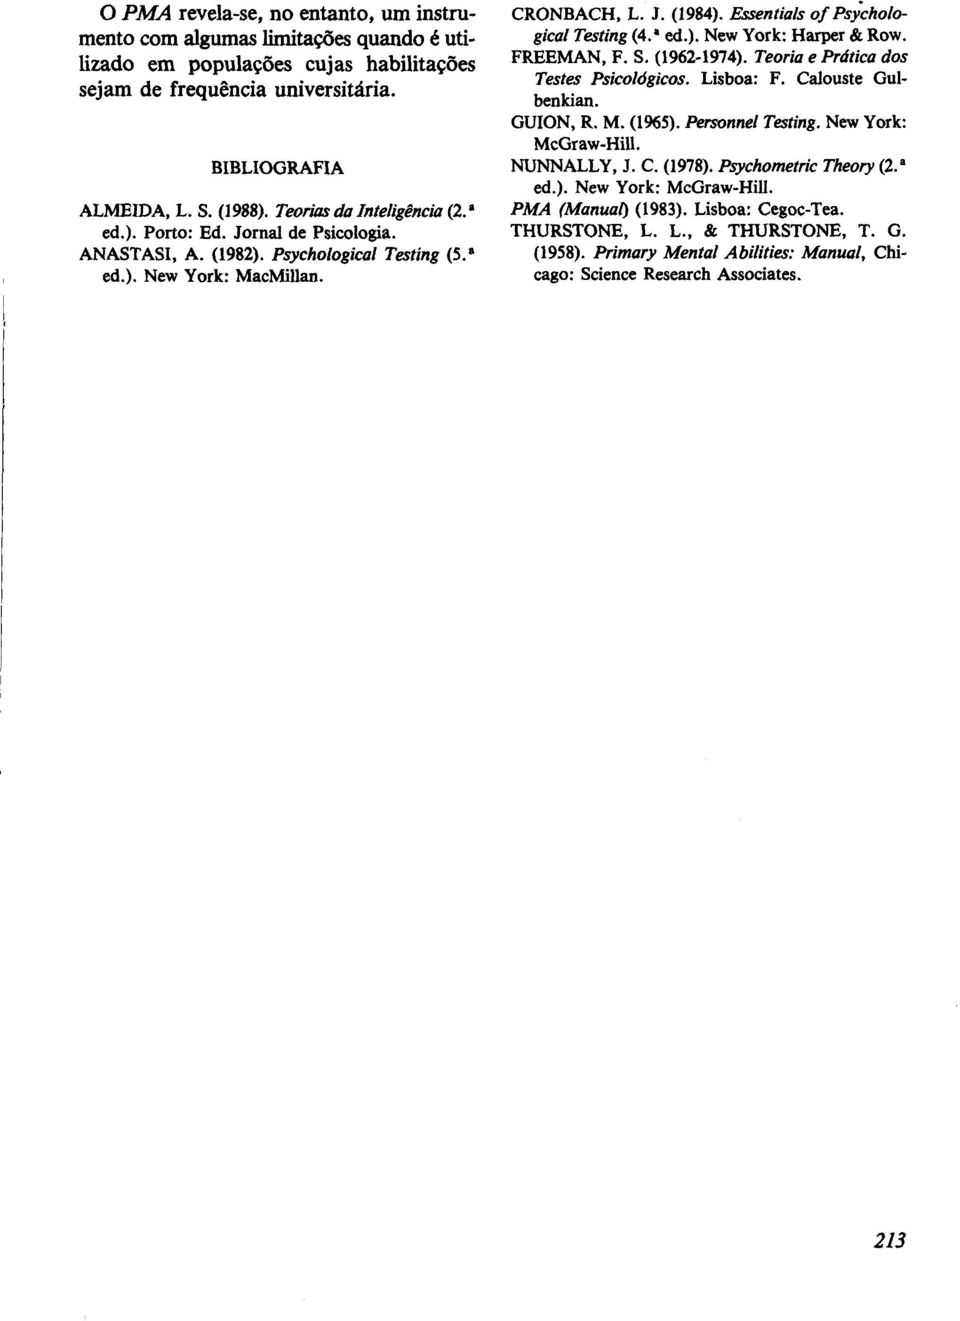 JZssentials of Psy'chological Tating (4.a 4.). New York: Harper &i Row. FREEMAN, F. S. (19621974). Teoria e Prática dos Testes Psicológicos. Lisboa: F. Calouste Gulbenkian. GUION, R. M. (1%5).